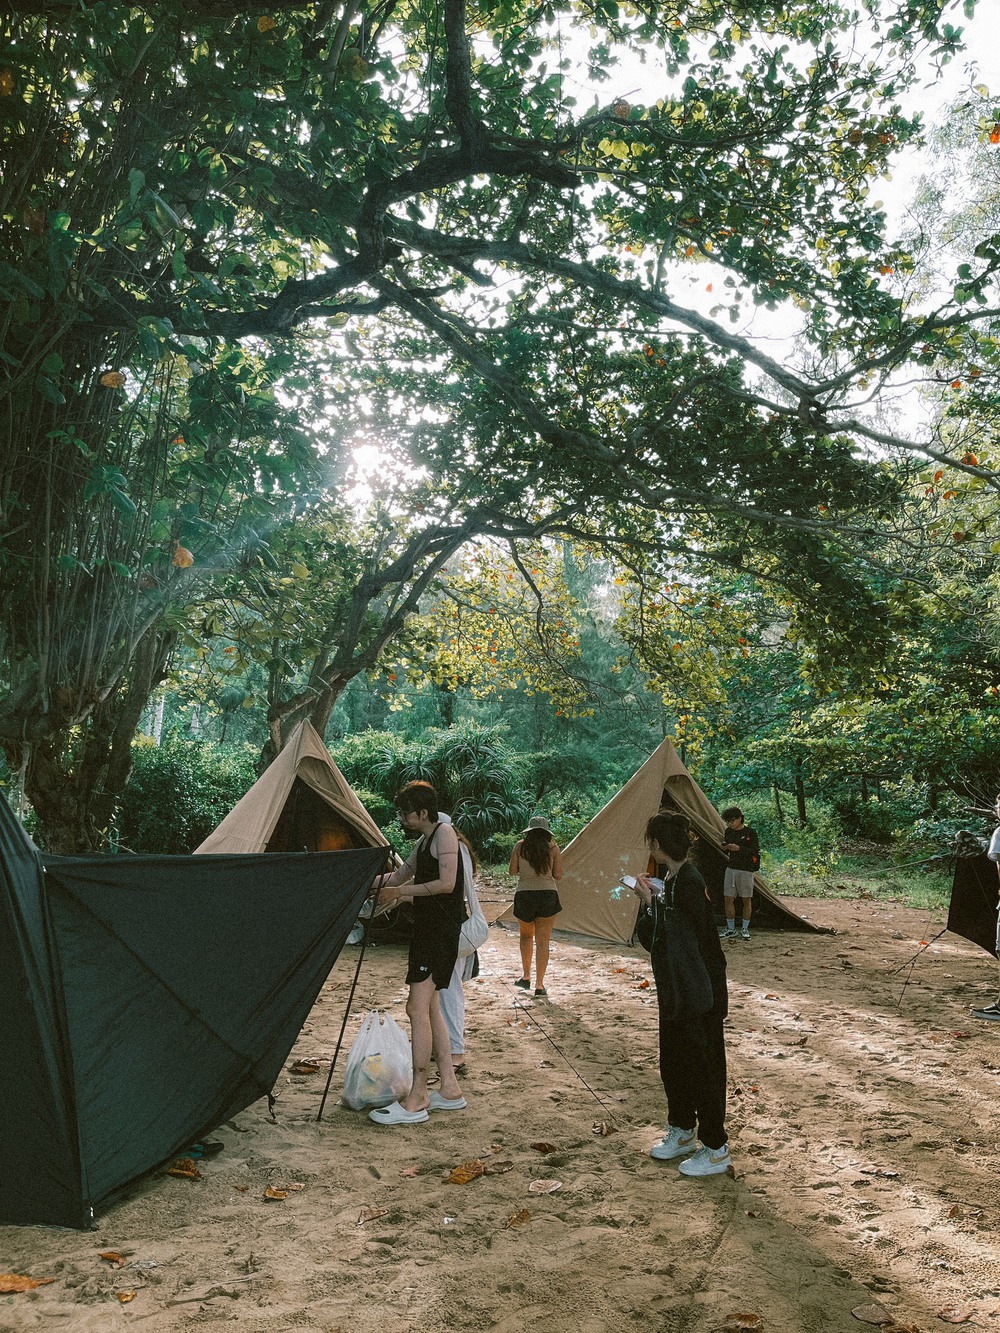 Địa điểm cắm trại mới nổi tại Phú Yên: Nơi có đồi cỏ săn bình minh đẹp hút hồn - ảnh 12